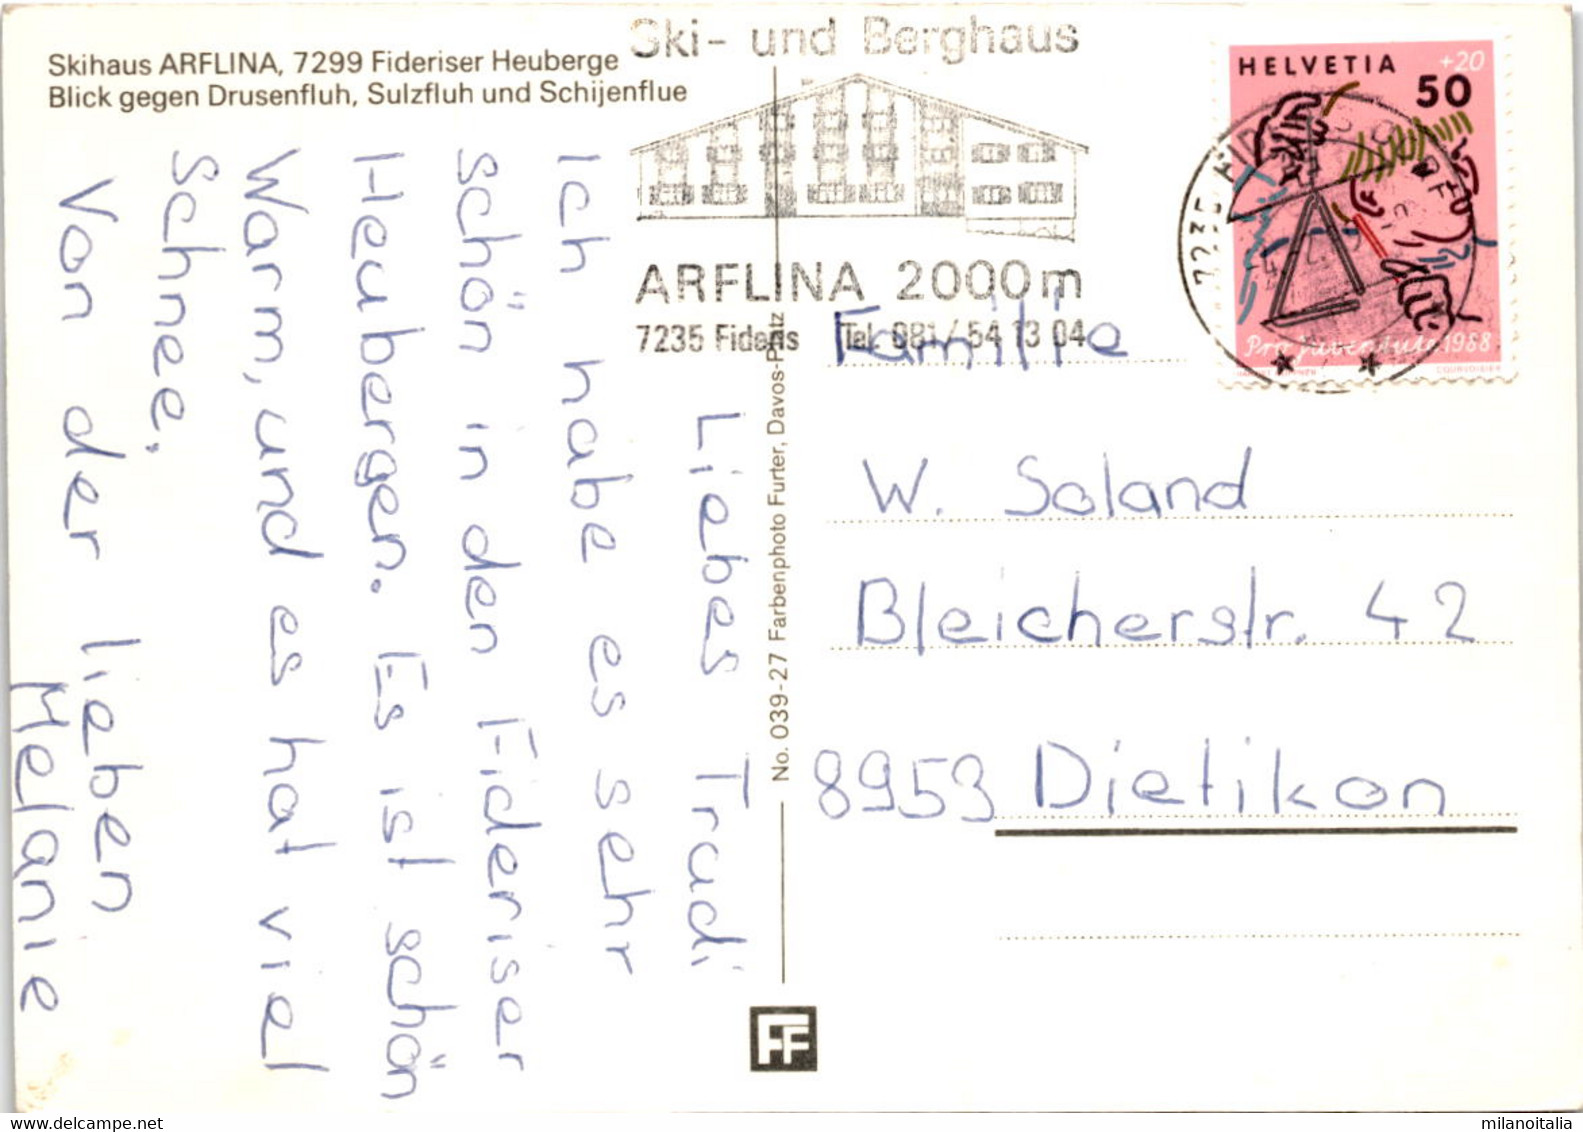 Skihaus Arflina - Fideriser Heuberge (039-27) * 4. 2. 1989 - Fideris